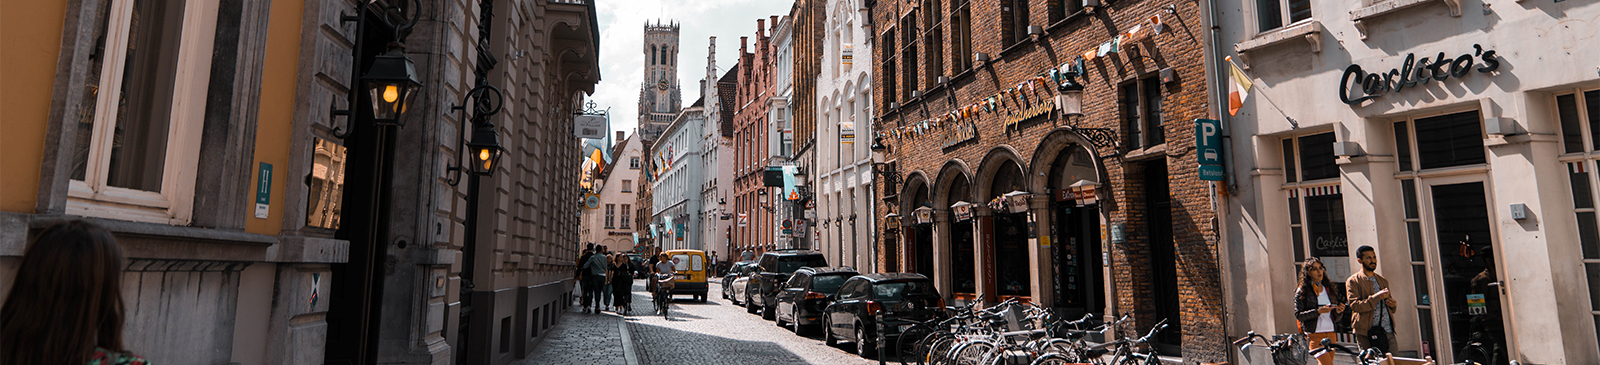 Straat met handelszaken in Brugge - foto van Unsplash